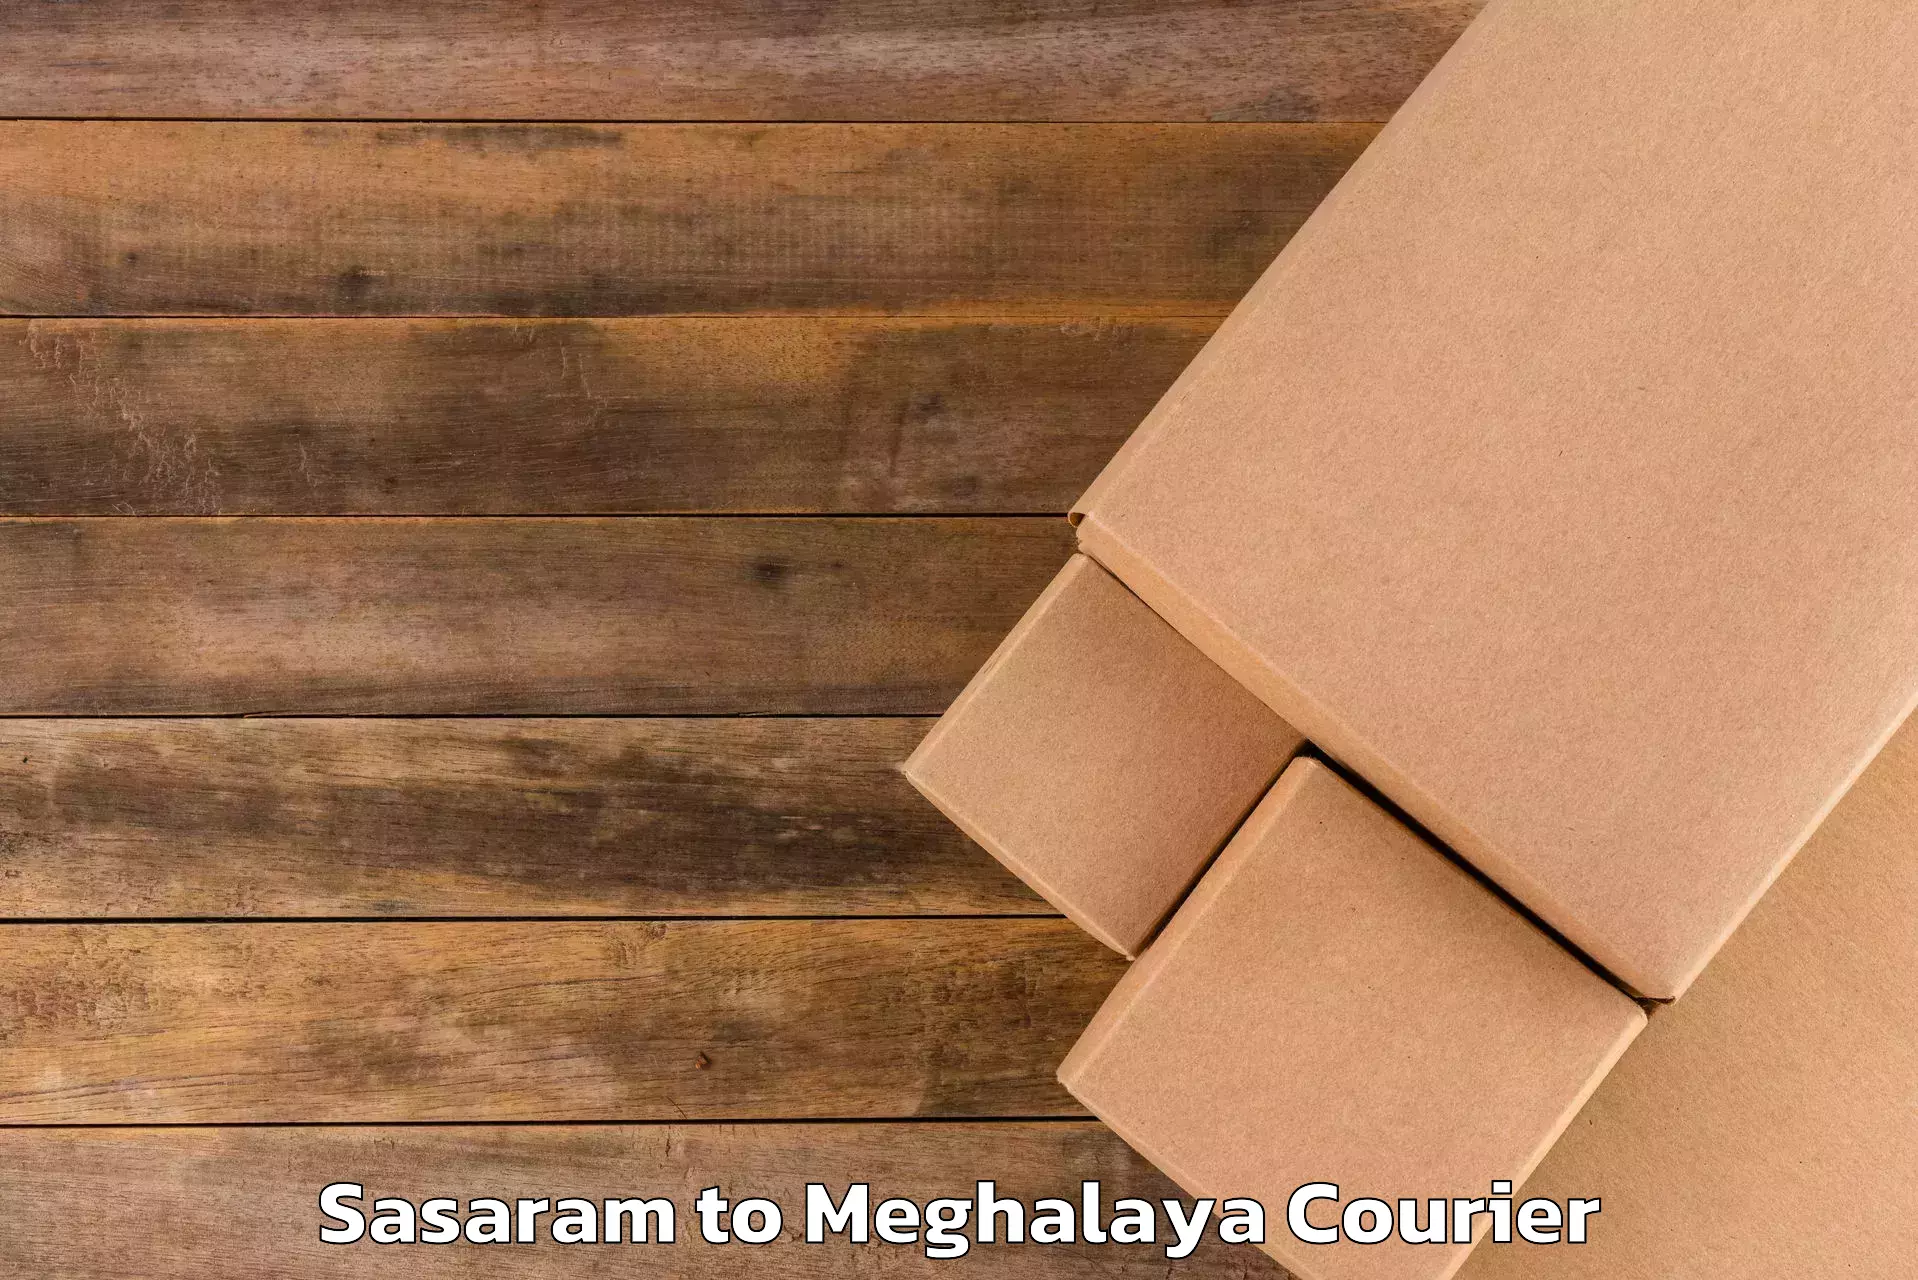 Luggage delivery optimization Sasaram to Meghalaya